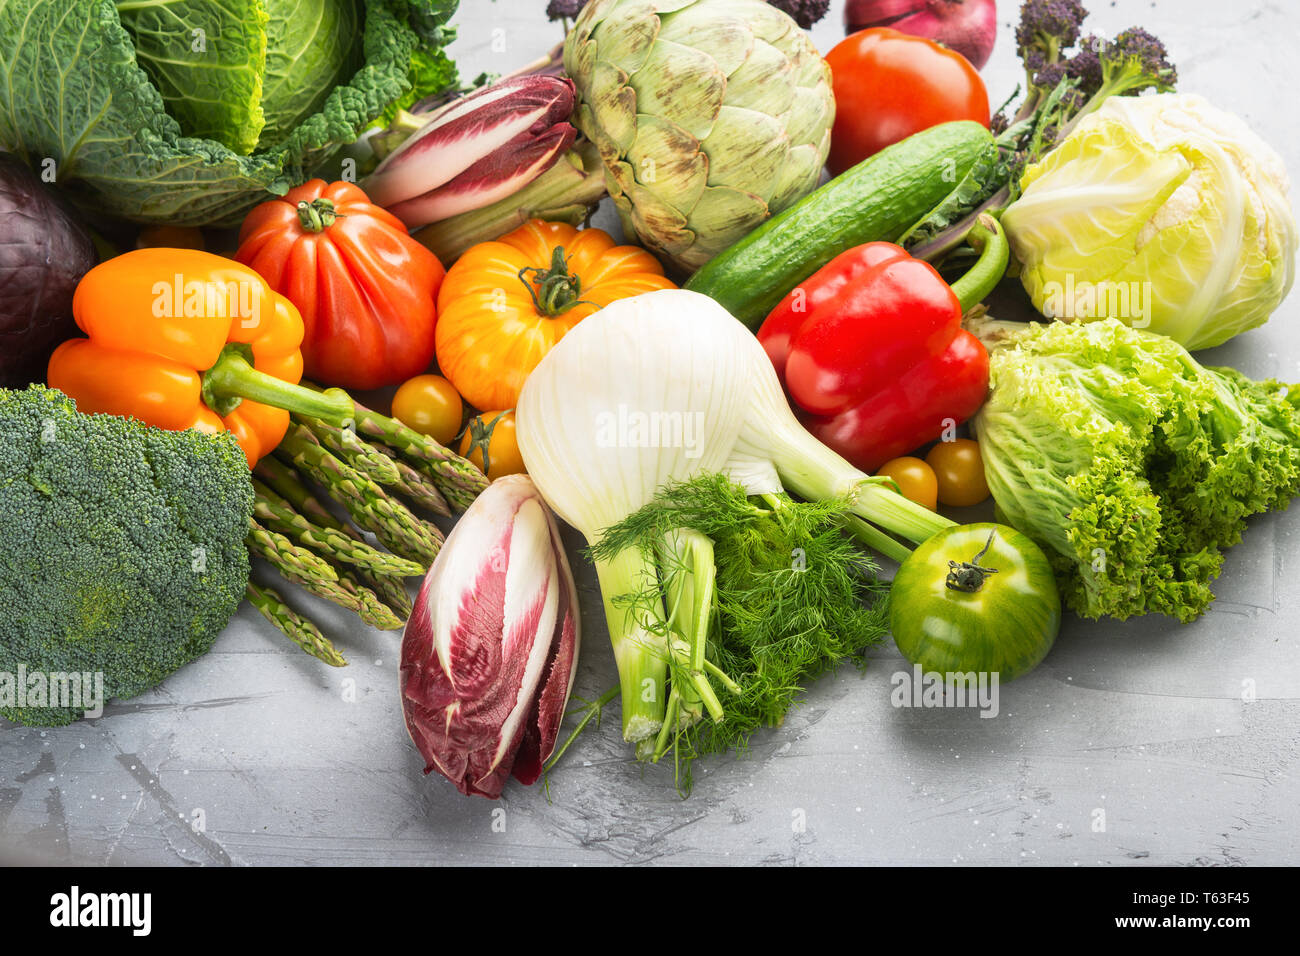 Frisches rohes Gemüse, Kohl Karotten Pfeffer Fenchel Broccoli Spargel Tomaten Salat artichocke, auf Grau konkreten Hintergrund, selektiver Fokus Stockfoto